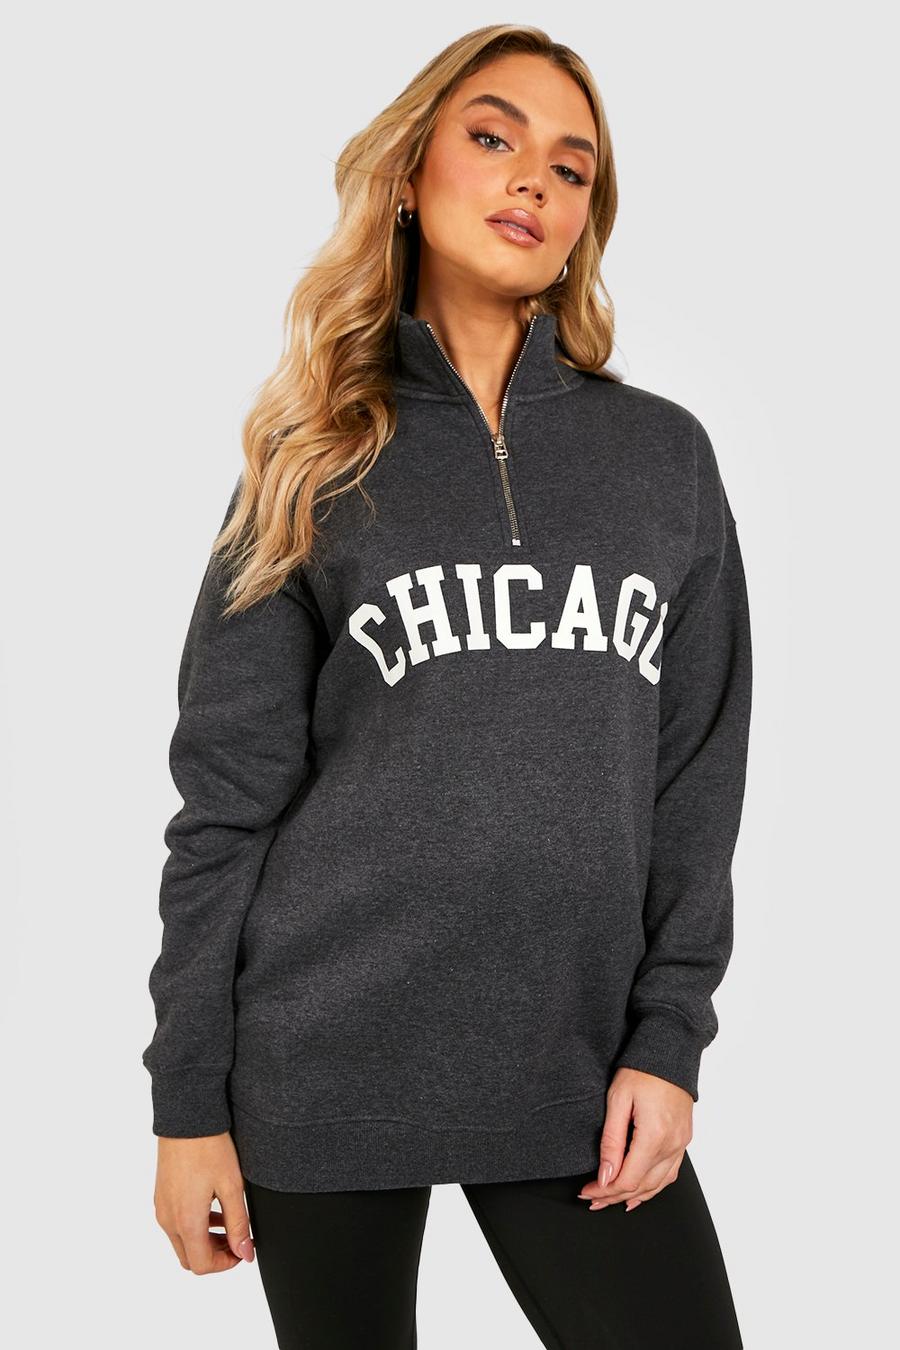 Charcoal grey Maternity Chicago Half Zip Sweatshirt